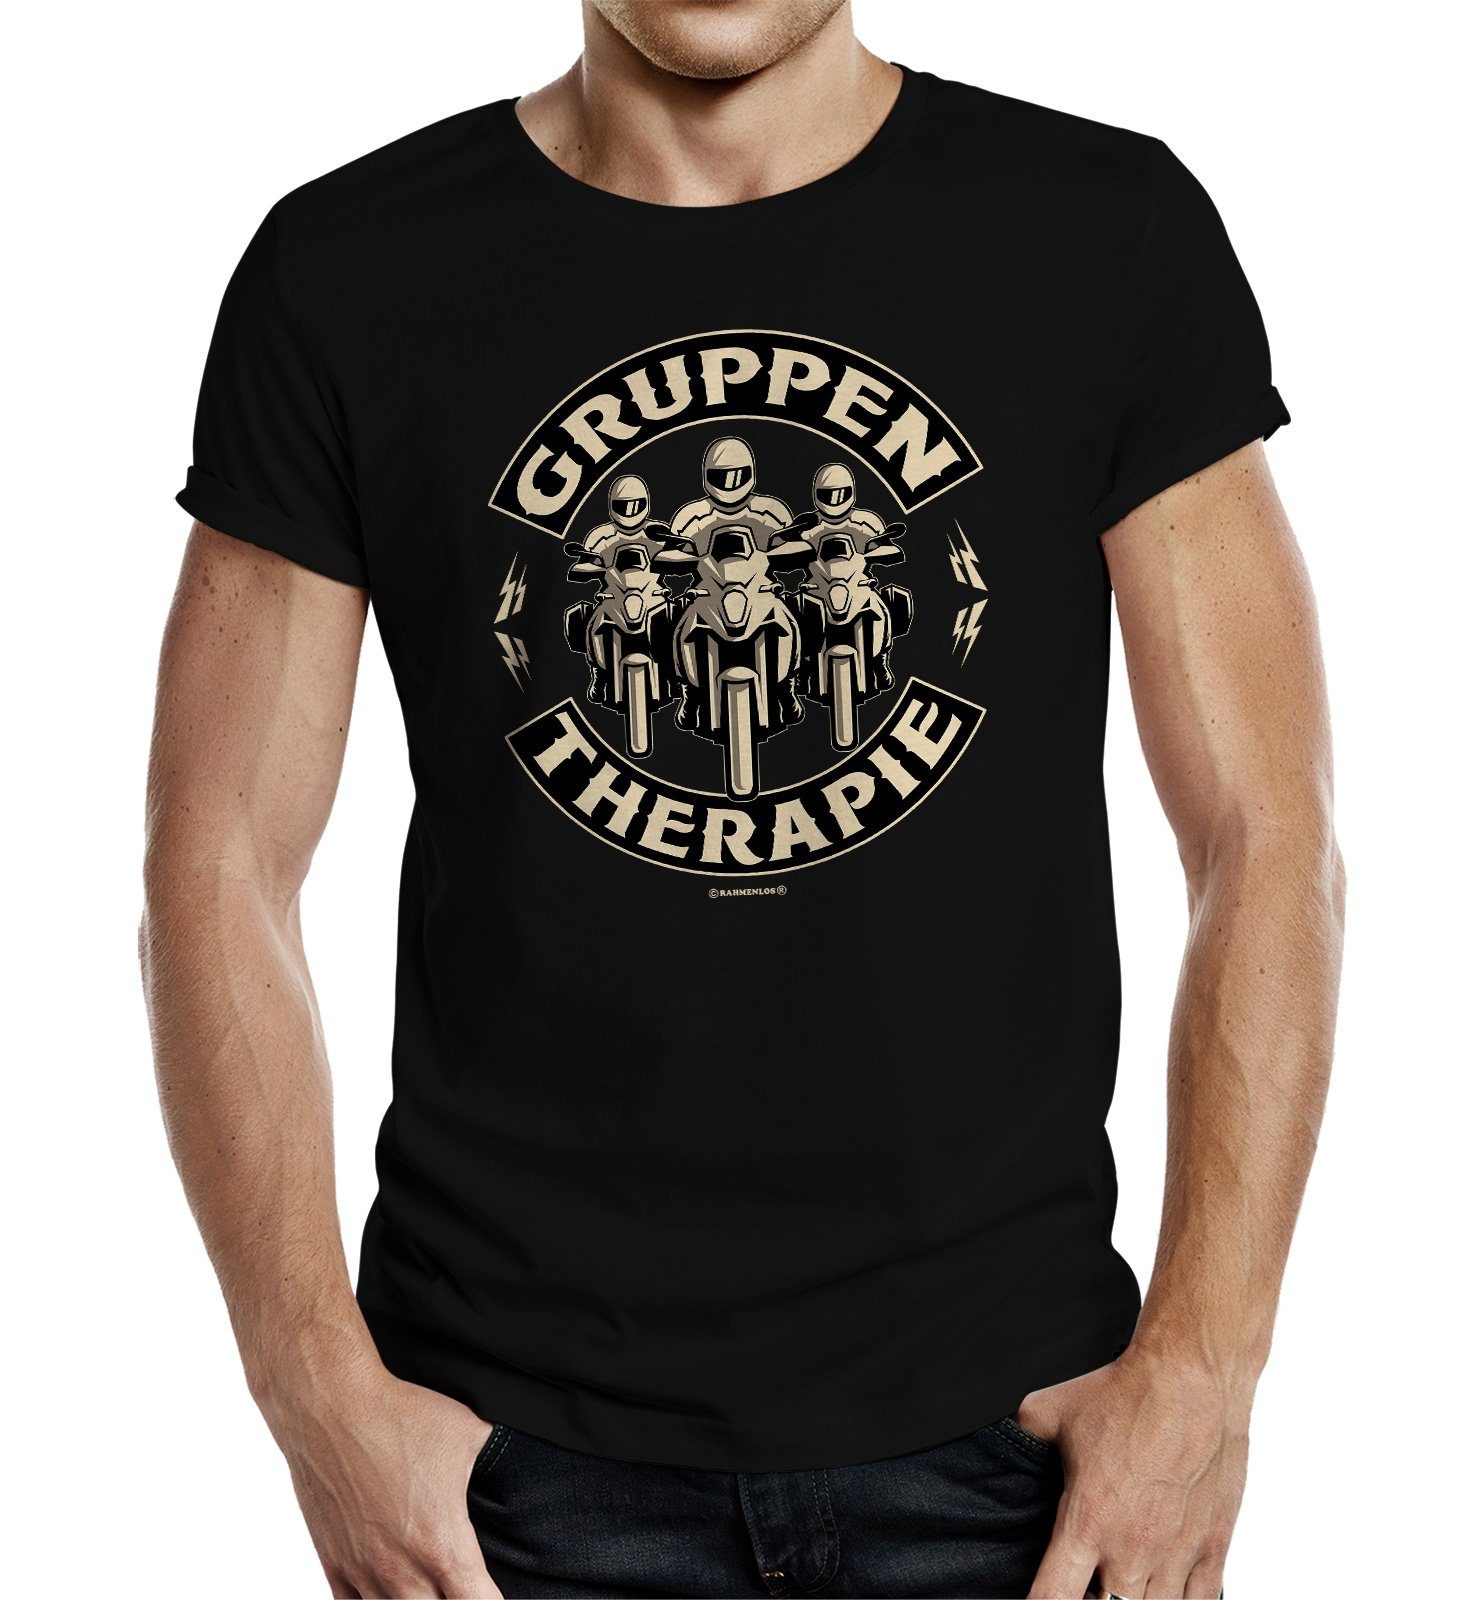 Rahmenlos T-Shirt als Geschenk für Biker und Motorradfahrer - Gruppentherapie